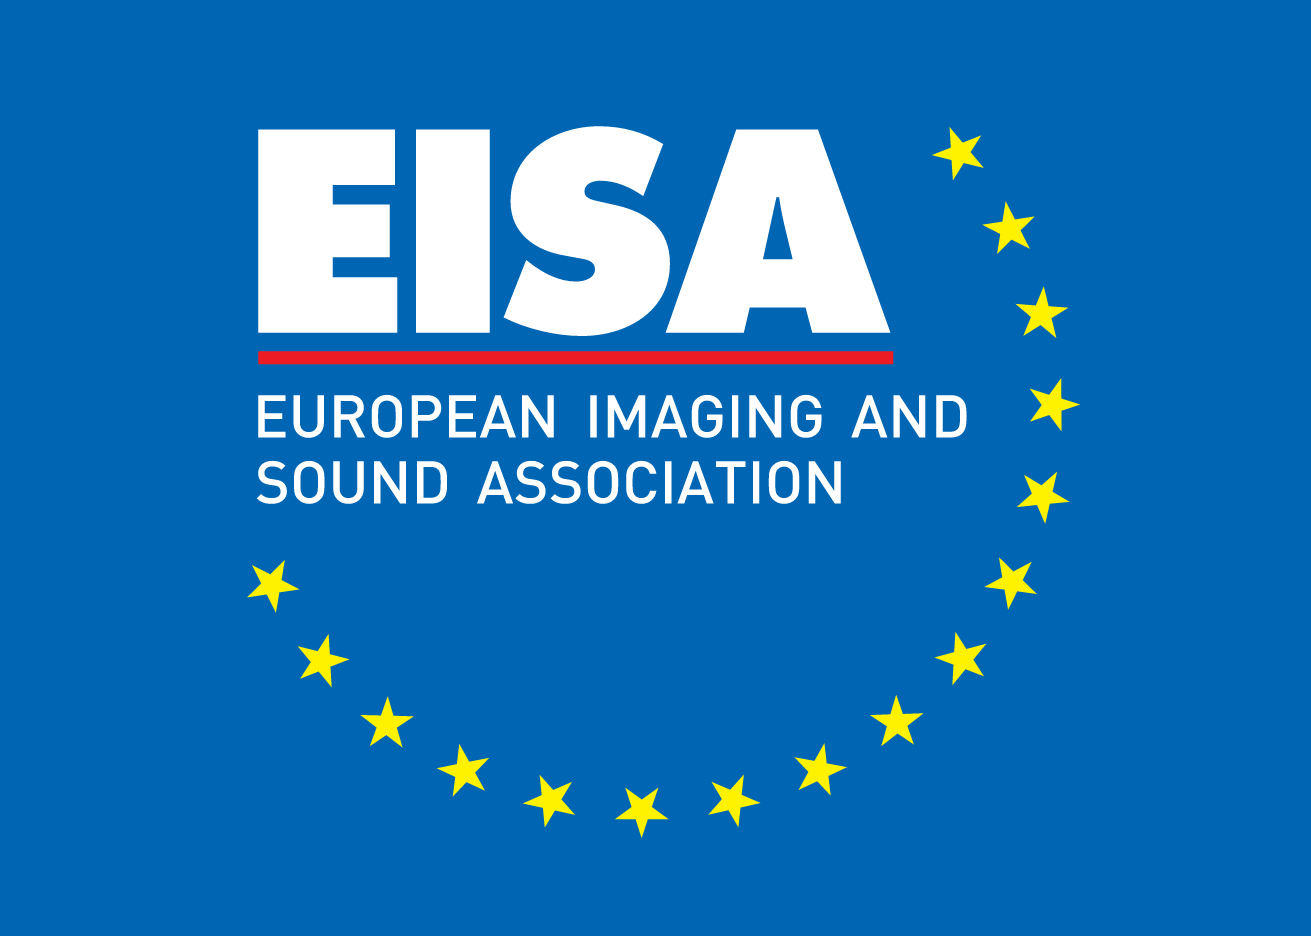 Eisa awards logo